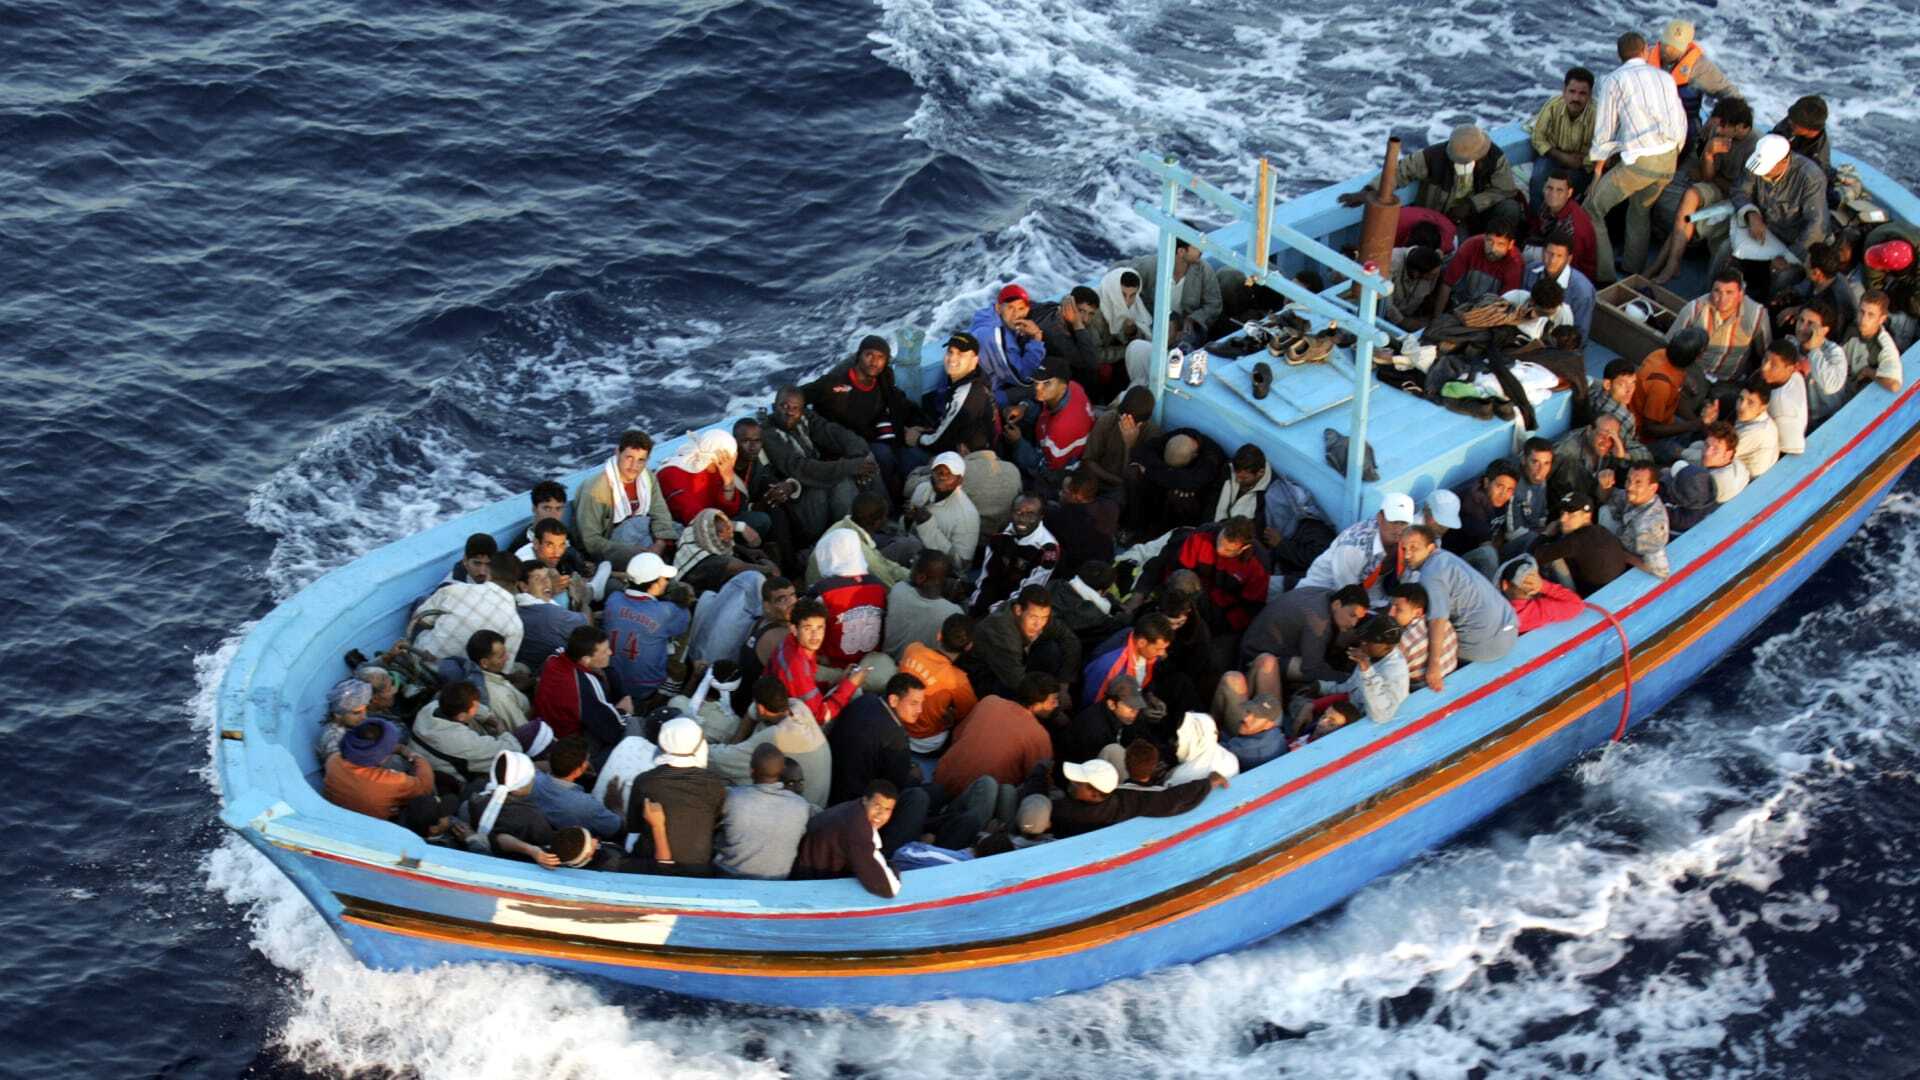 العثور على 5 جثث ومئات المهاجرين على متن سفينة في المتوسط